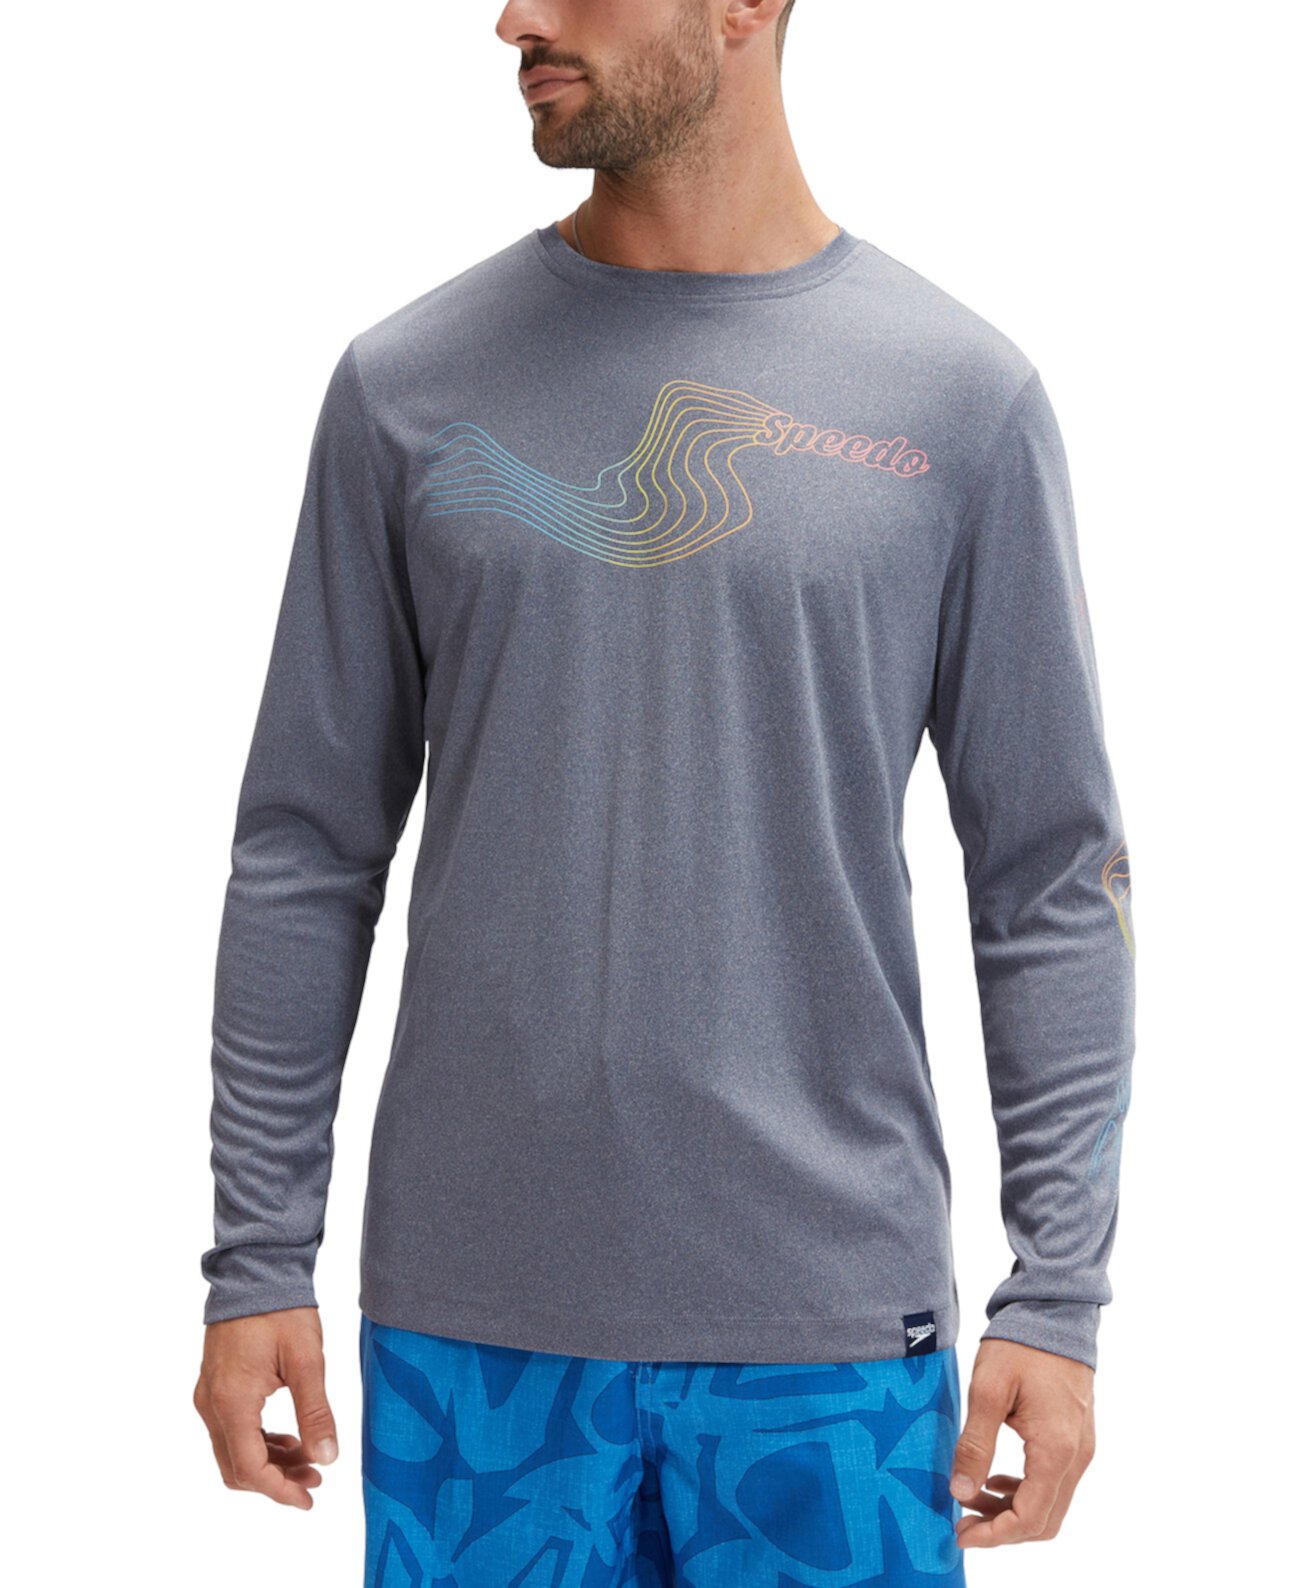 Men's Long Sleeve Performance Graphic Swim Shirt Speedo